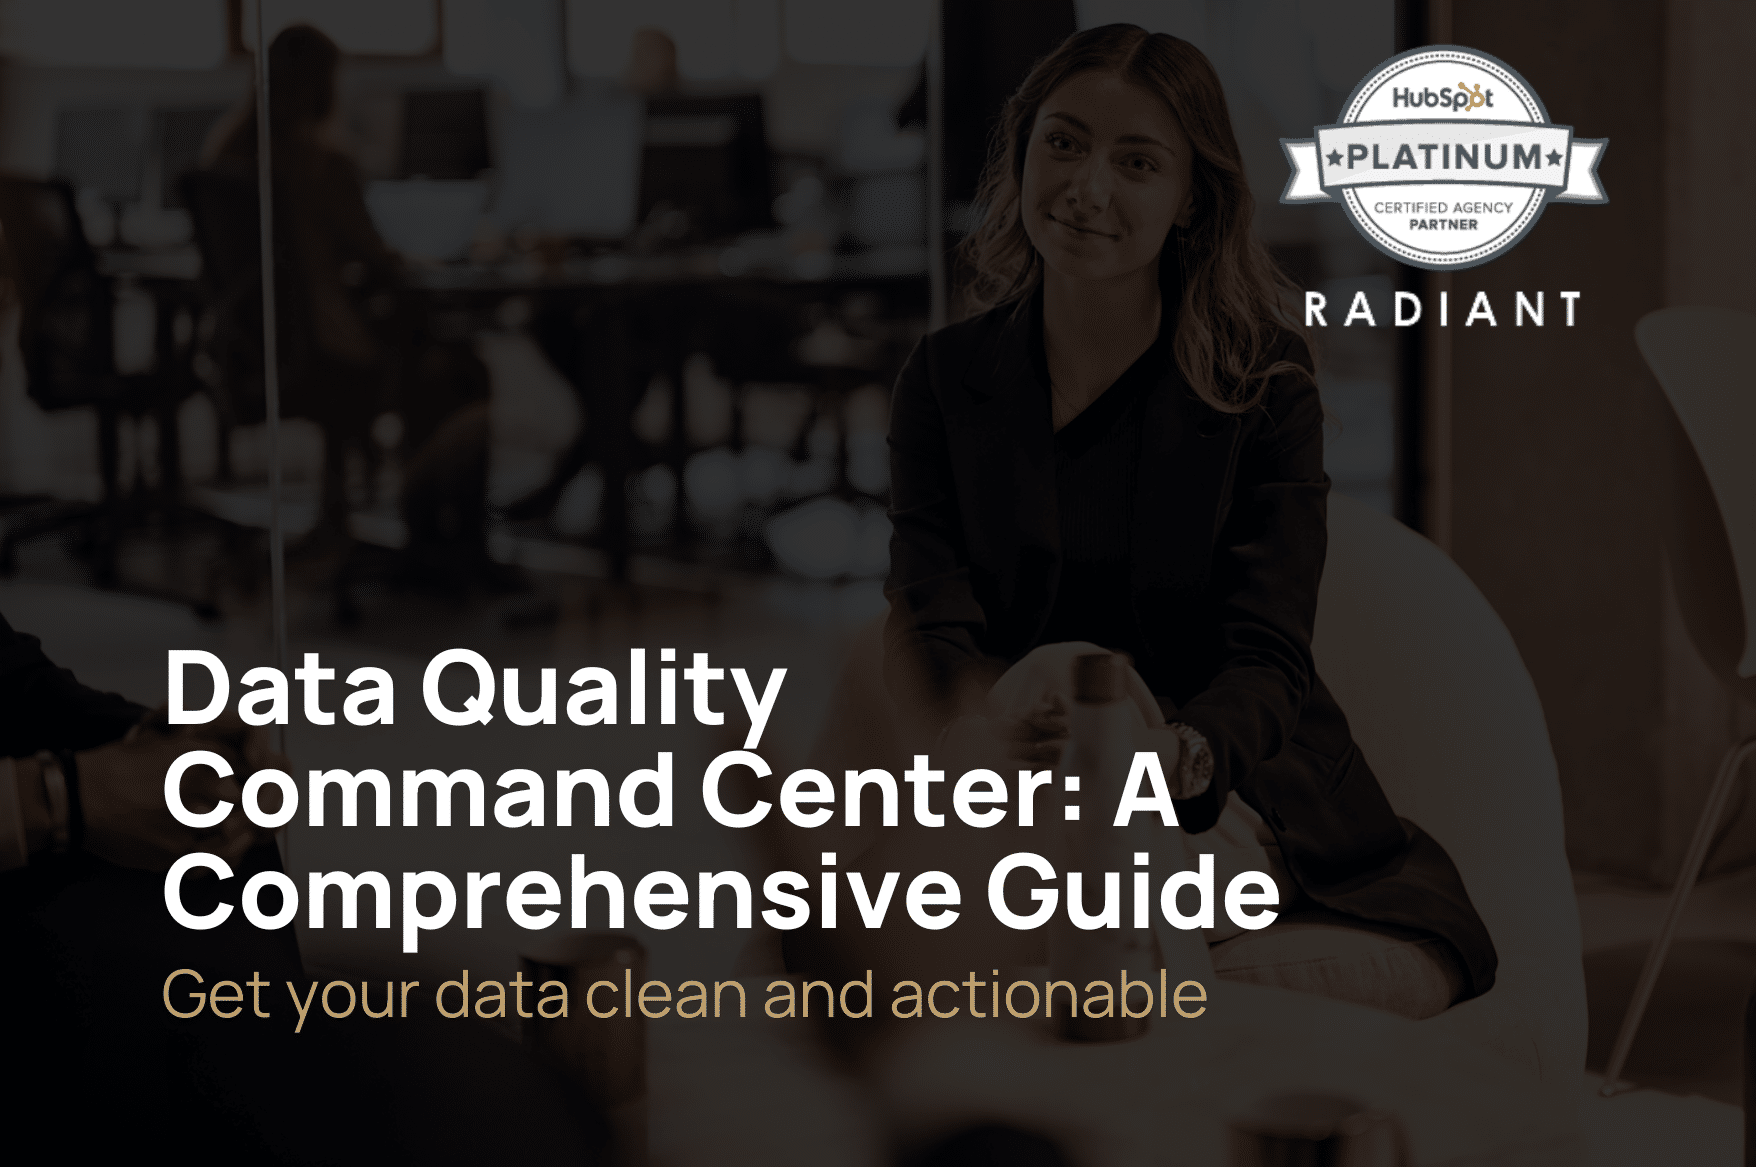 Data quality command center: En omfattende guide